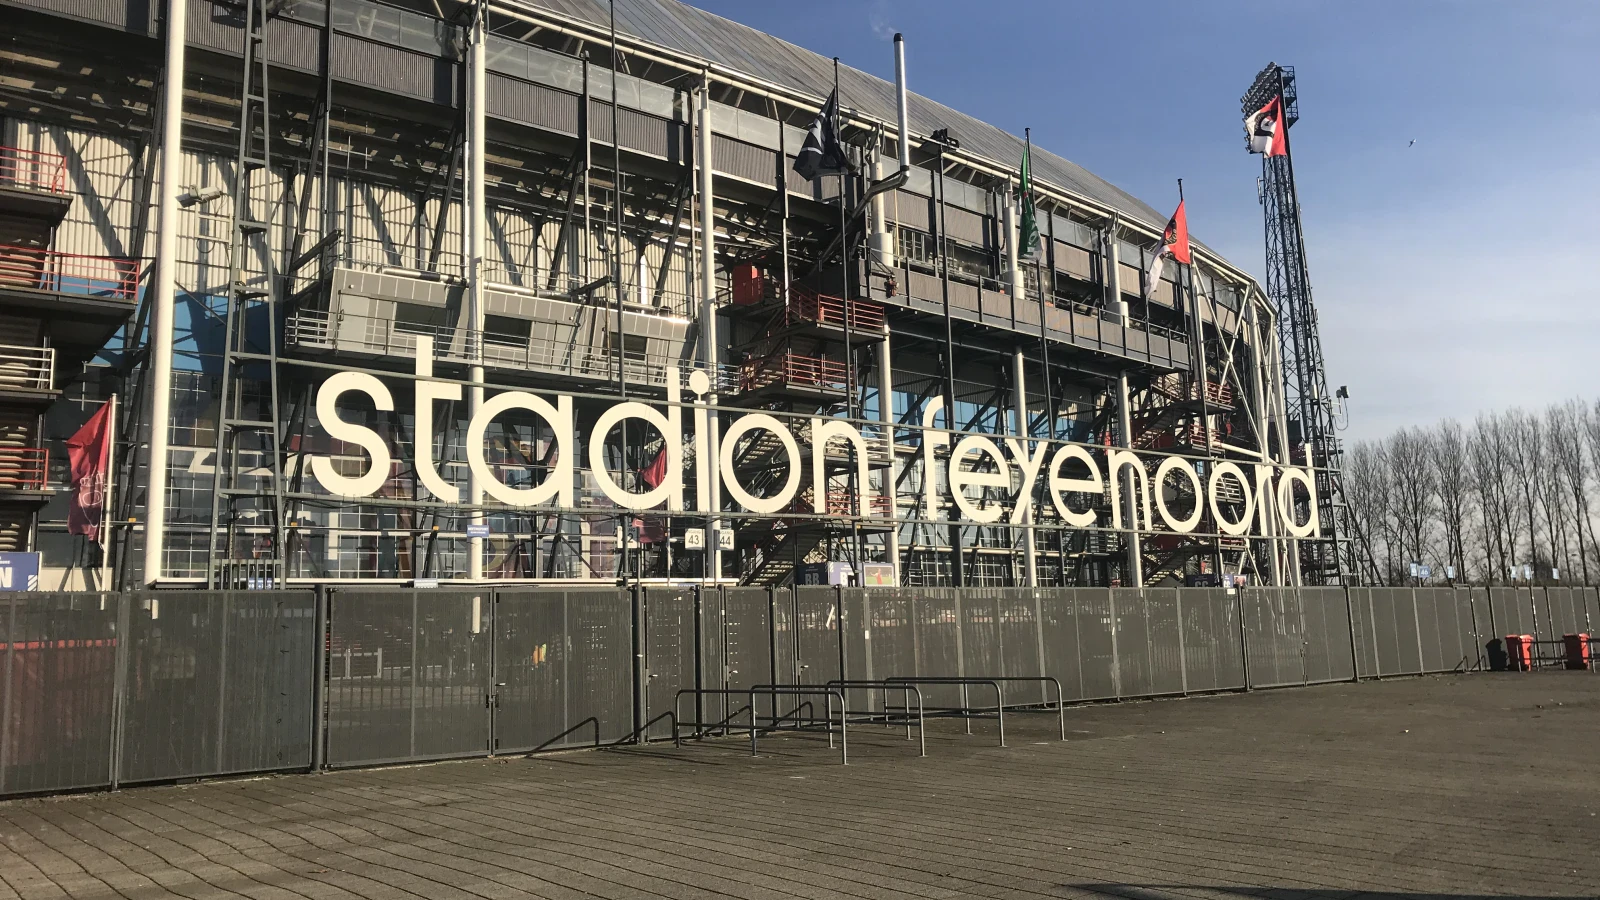 Zondag code rood voor heel Nederland, wedstrijd FC Groningen - Feyenoord lijkt niet door te kunnen gaan